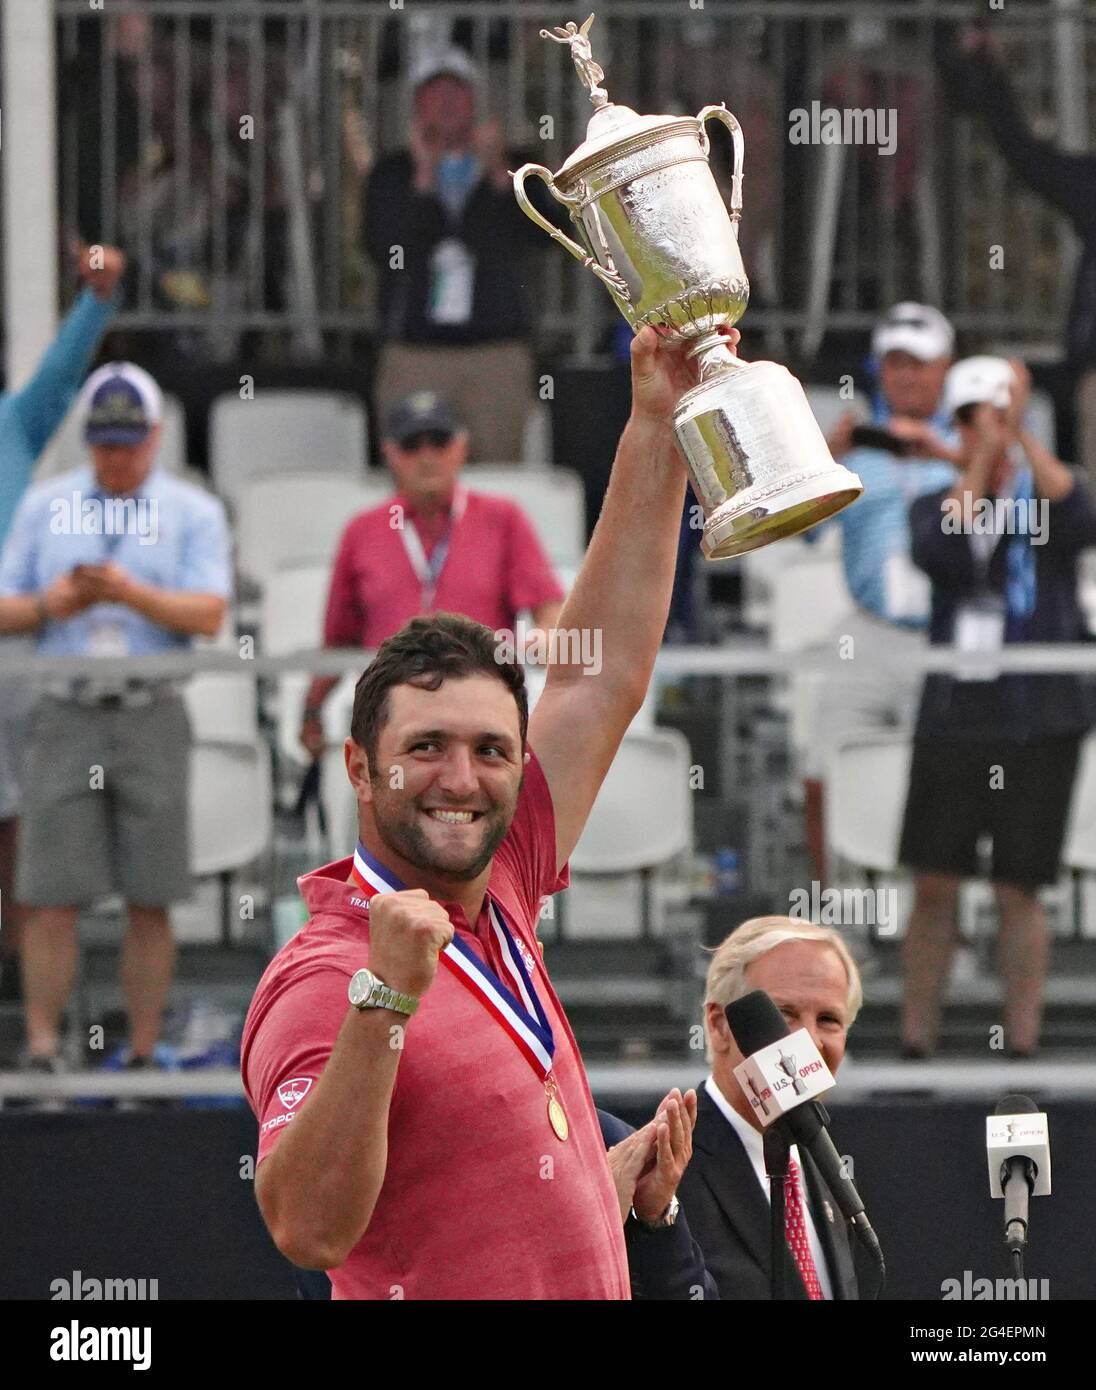 Jon Rahm di Spagna, si aggiudica il trofeo dopo aver vinto il 121° Campionato US Open al campo da golf Torrey Pines di San Diego, California, domenica 20 giugno 2021. Foto di Richard Ellis/UPI Foto Stock